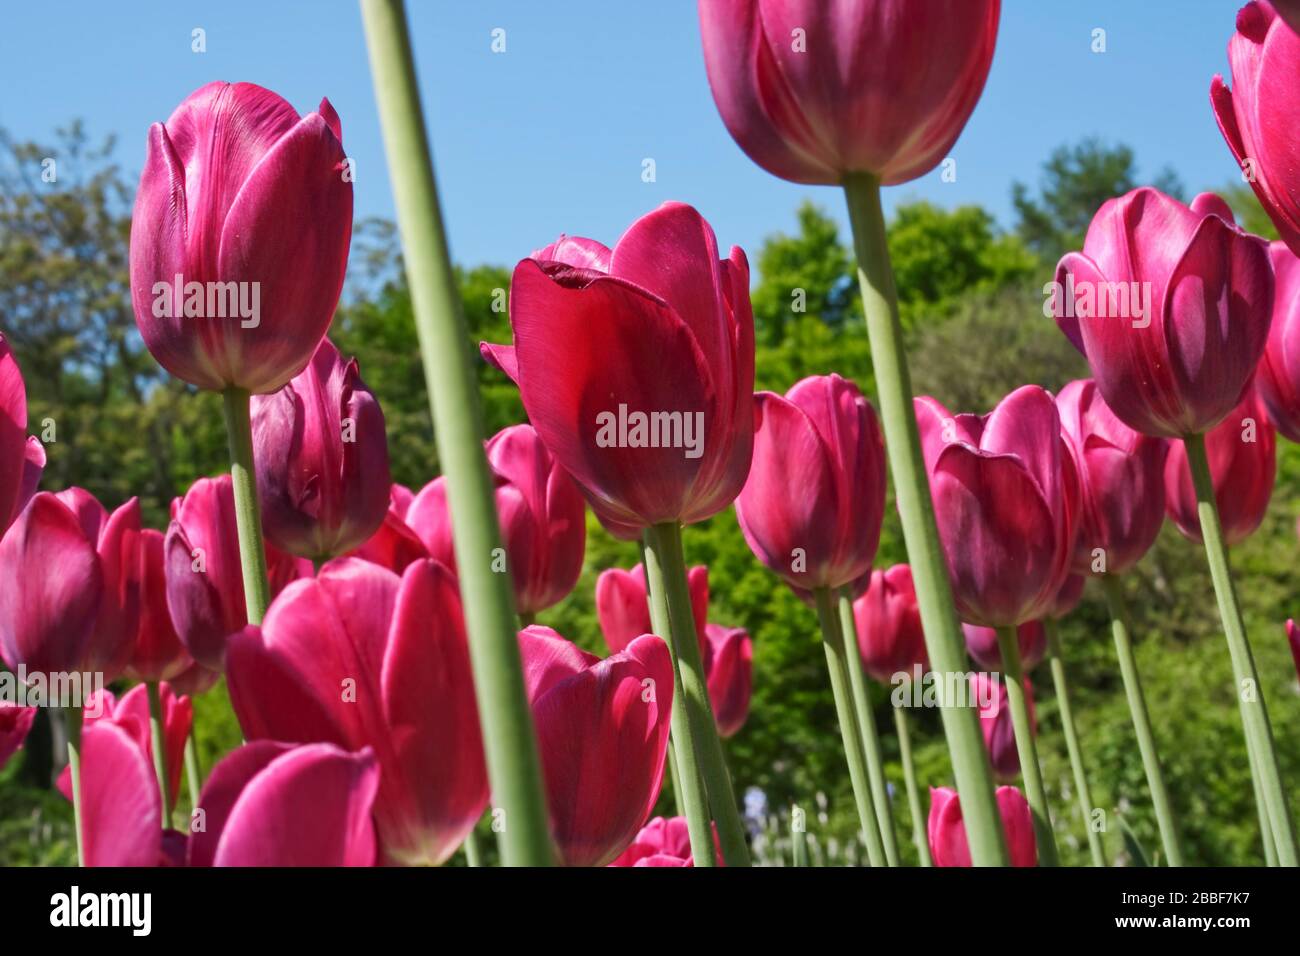 Tulipani (famiglia Lily, Liliaceae), Francoforte sul meno, Germania Foto Stock